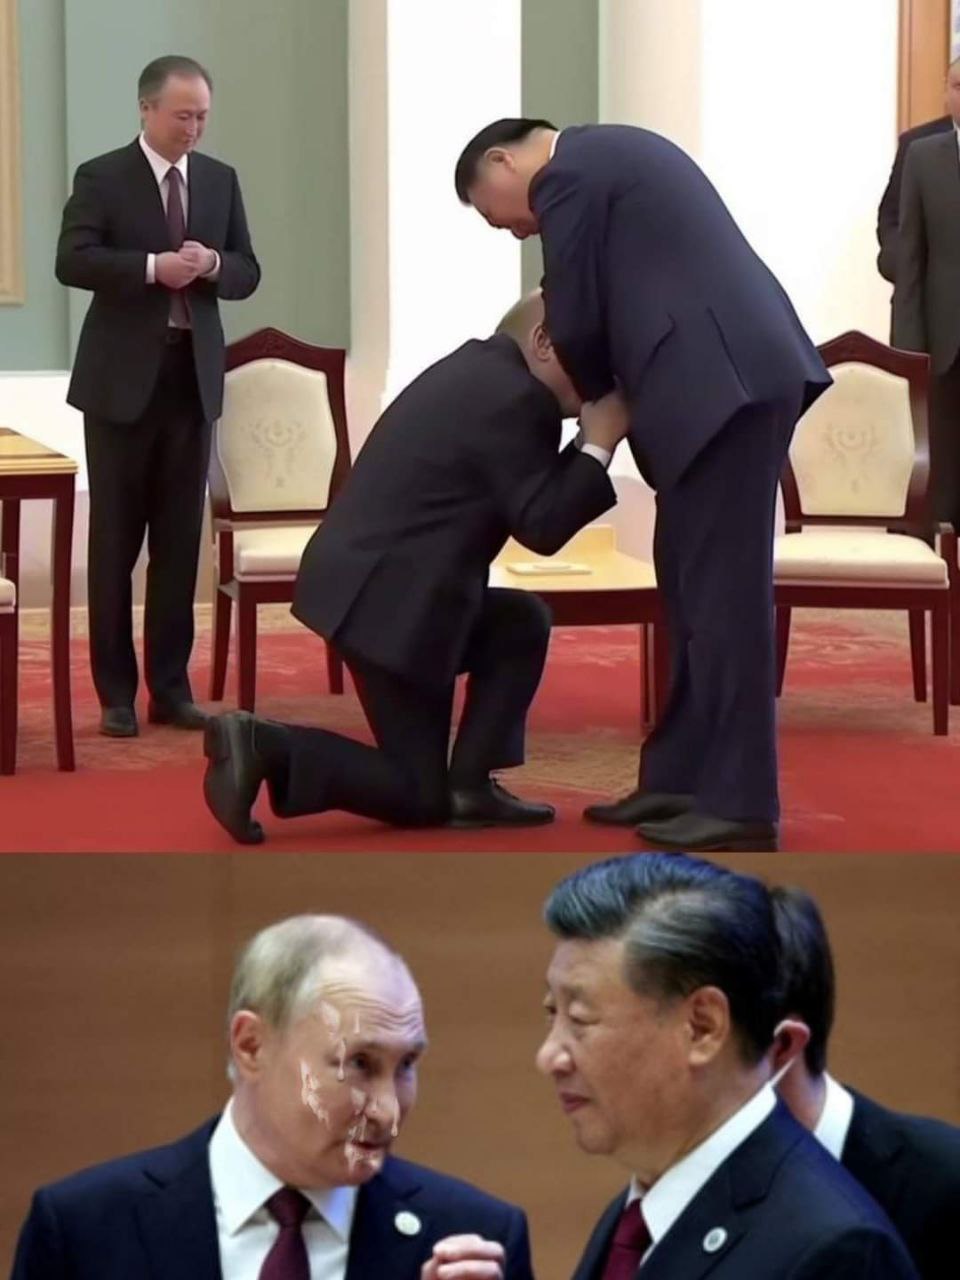 «Поцелуй кольцо». В соцсетях издеваются над Путиным за то, что он ползает перед китайским президентом (ФОТО)